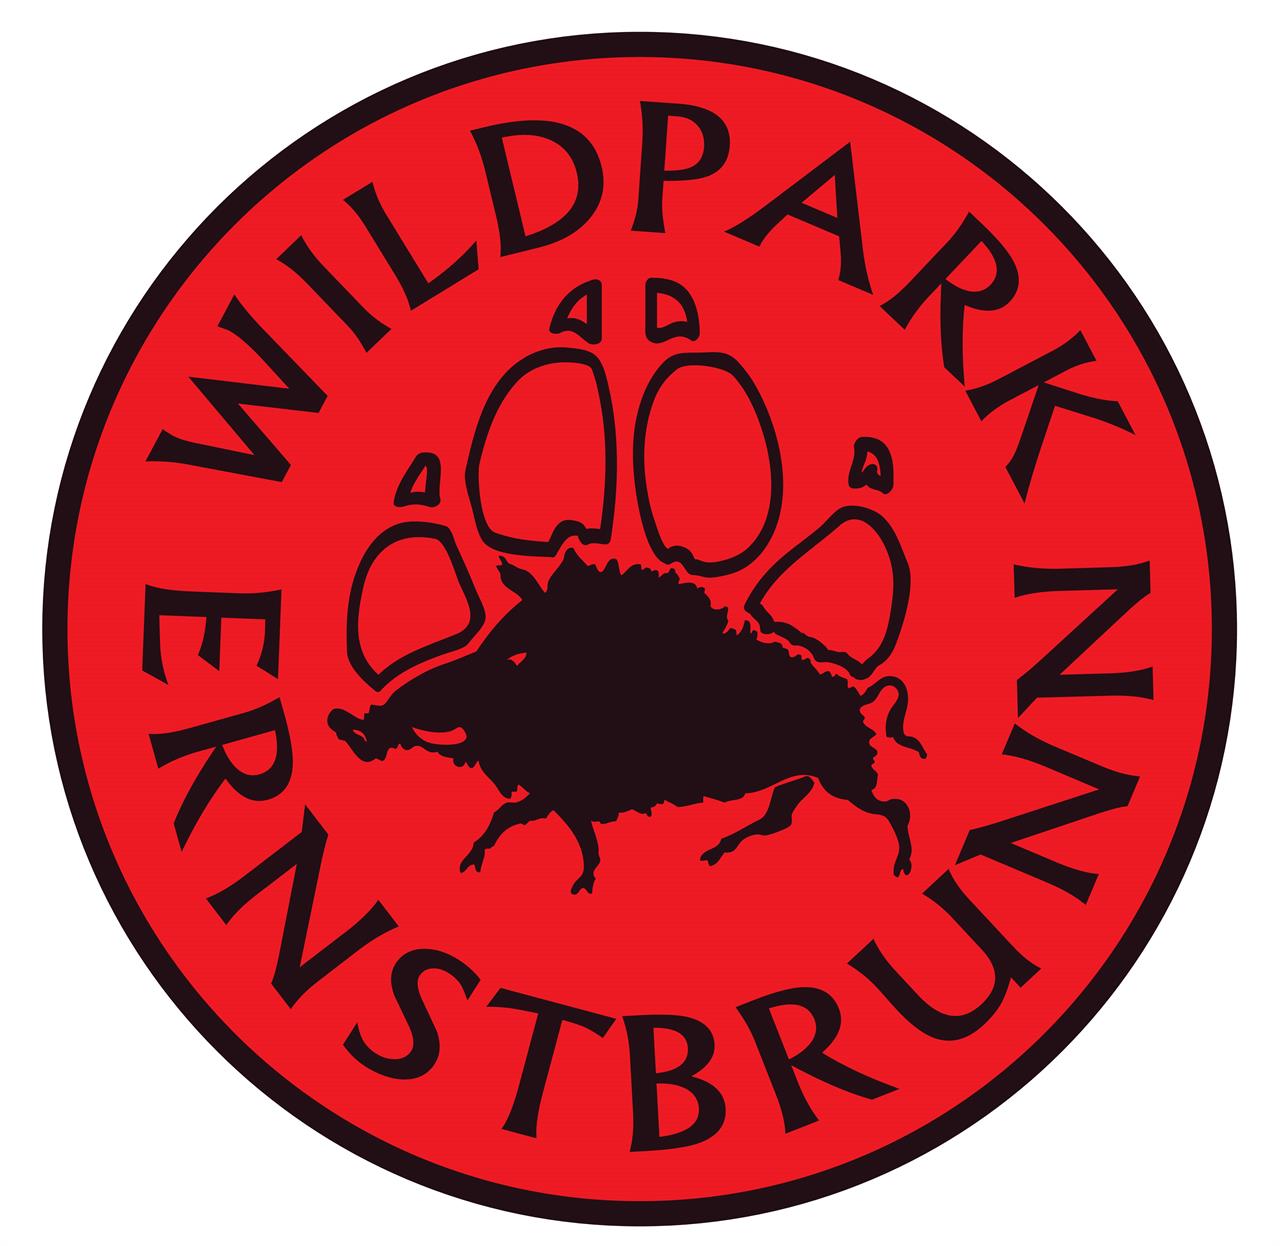 Wildpark Ernstbrunn, Logo (© Wildpark Ernstbrunn)